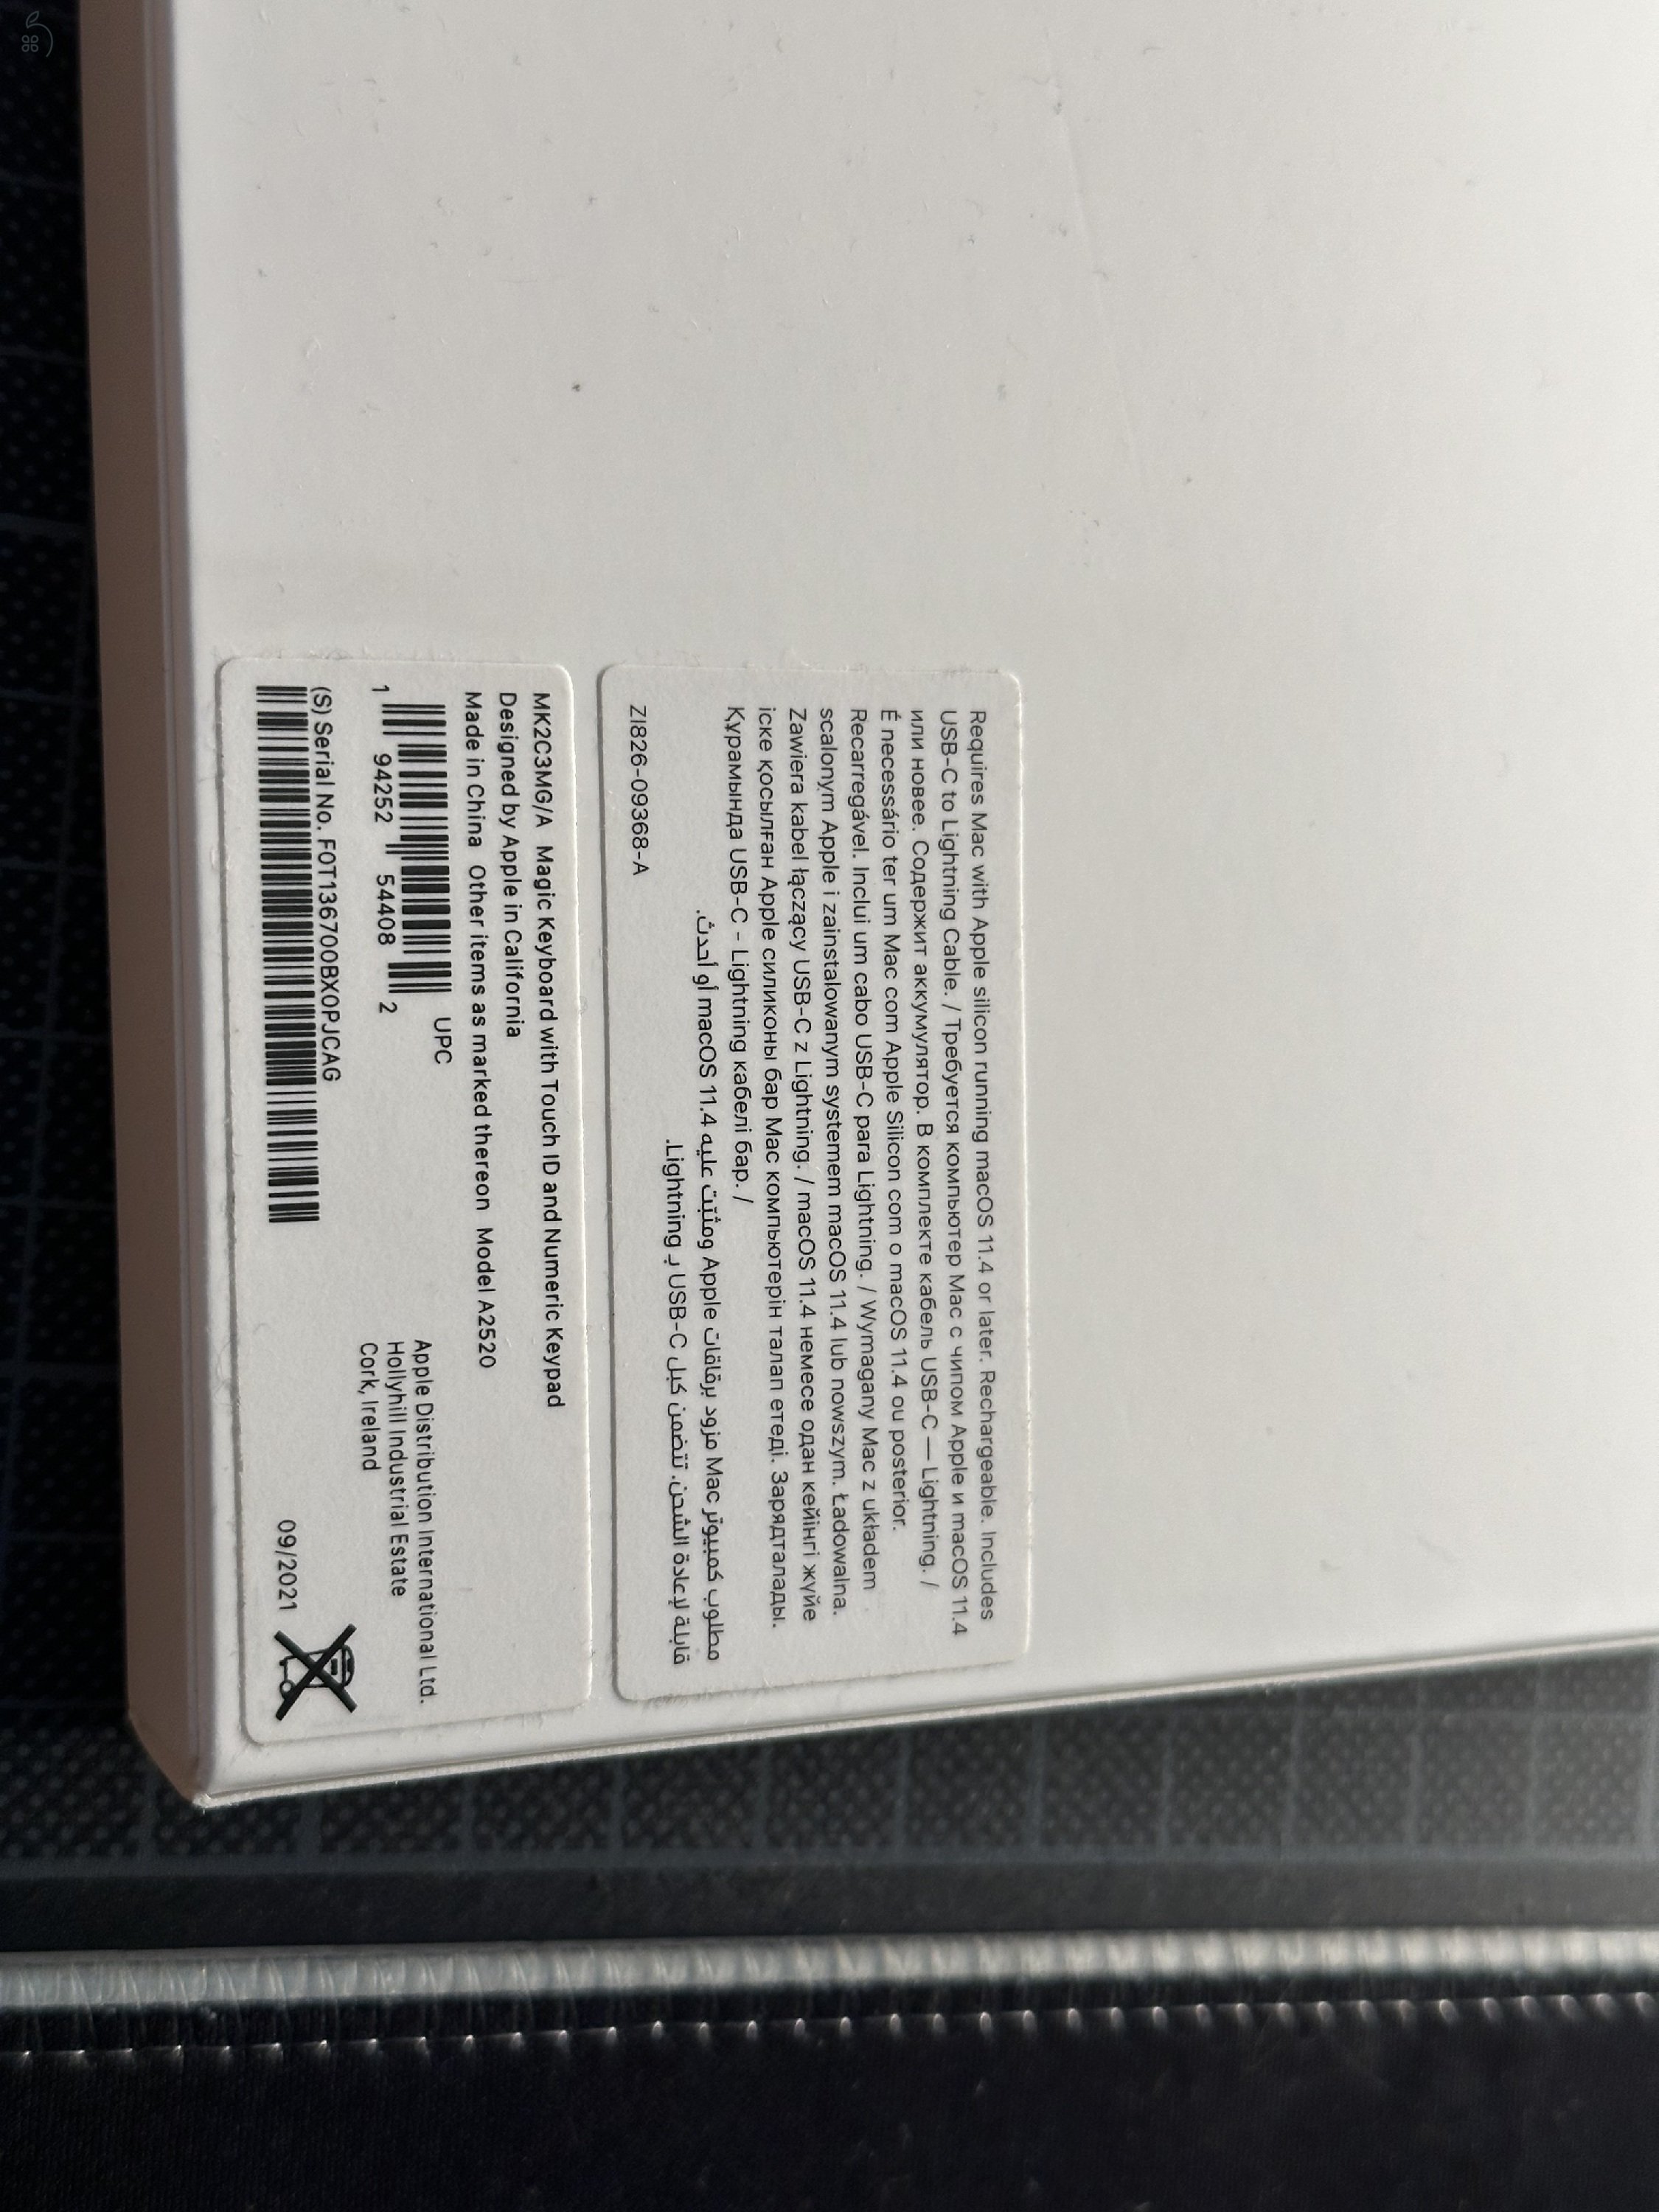 Apple M2 Mac Mini + Samsung Viewfinity S9 setup külön is